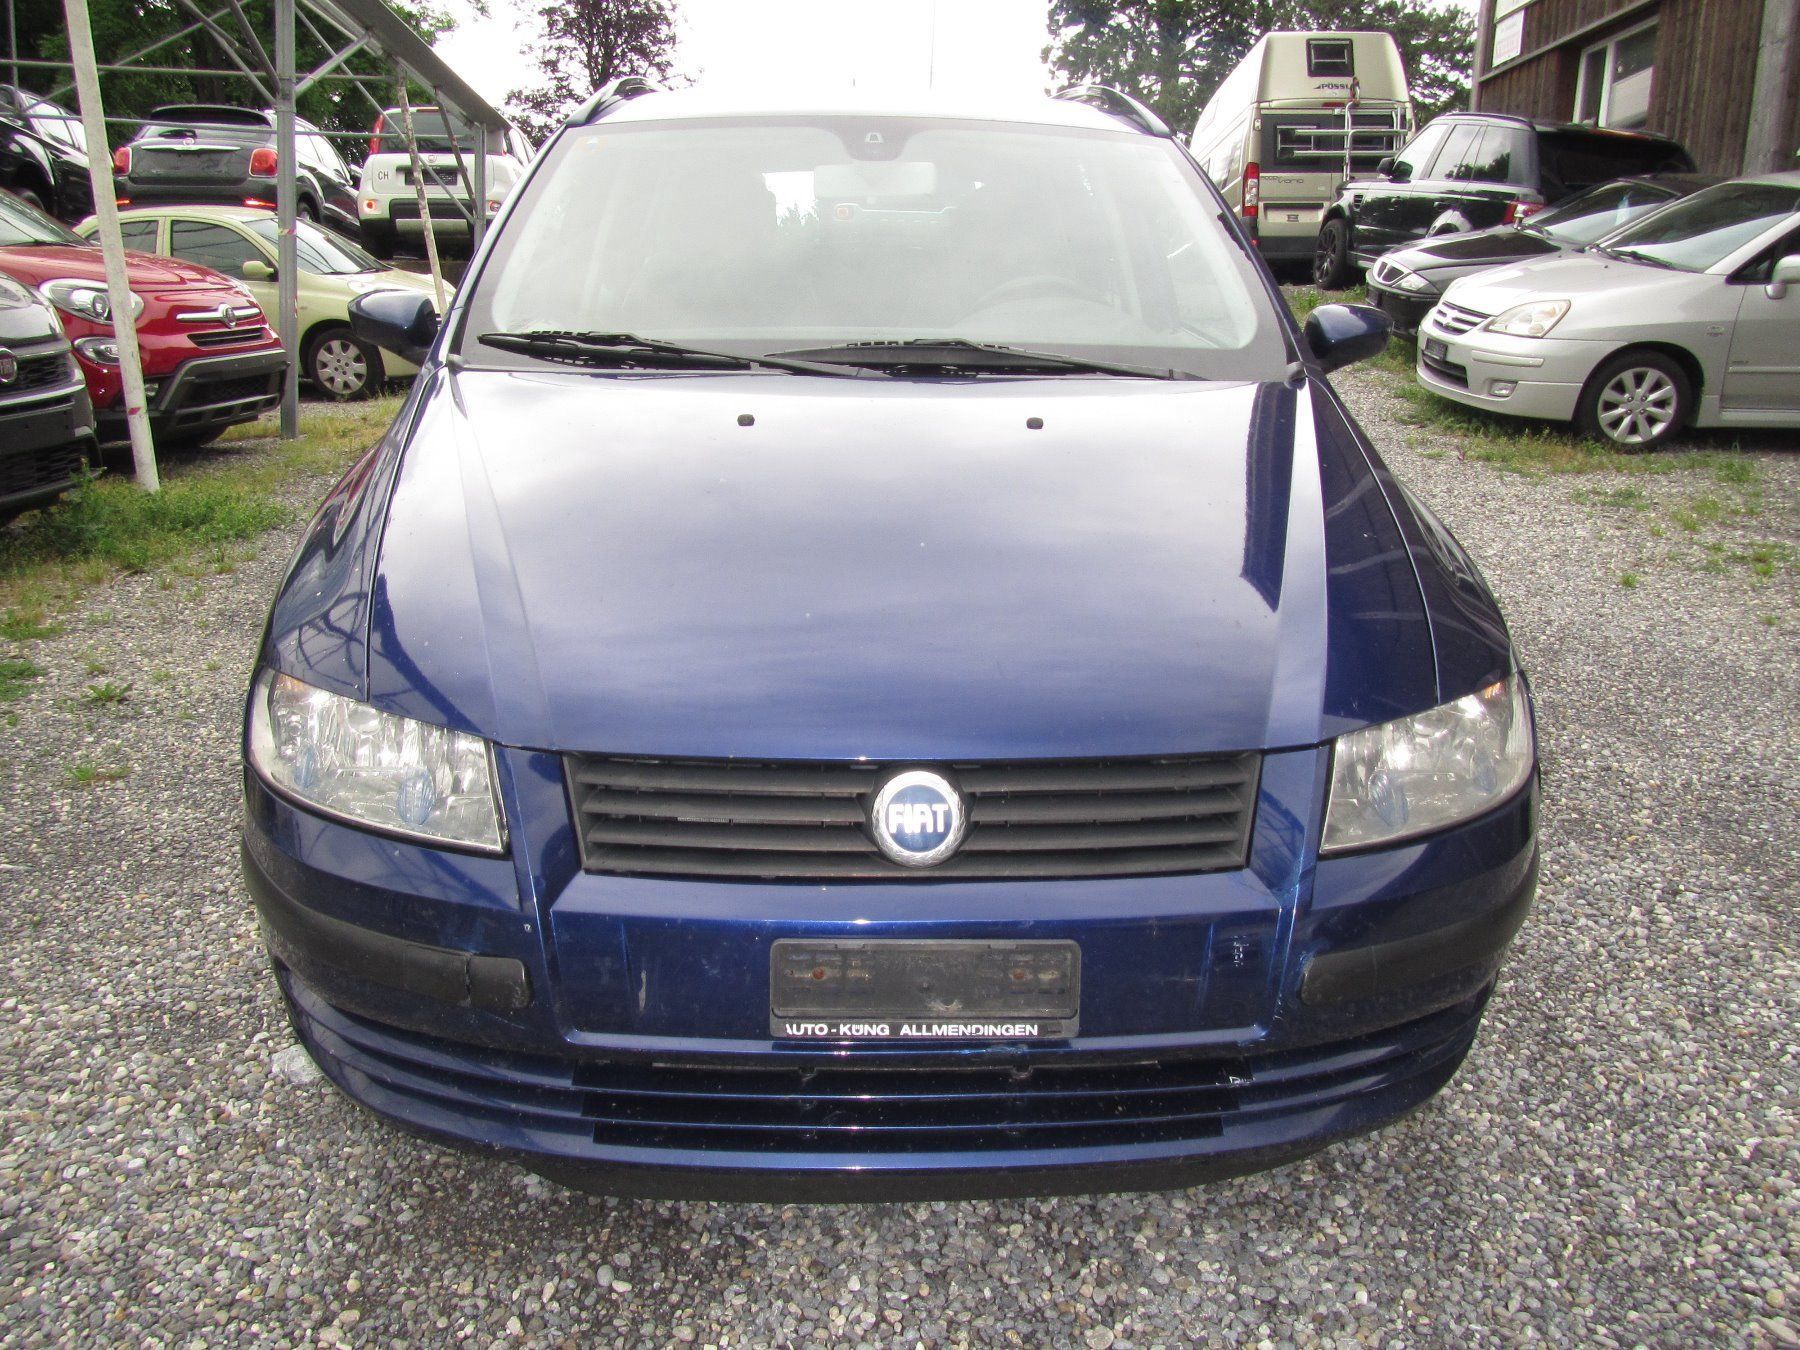 Fiat Stilo MW 1.9 JTD blau kaufen auf Ricardo